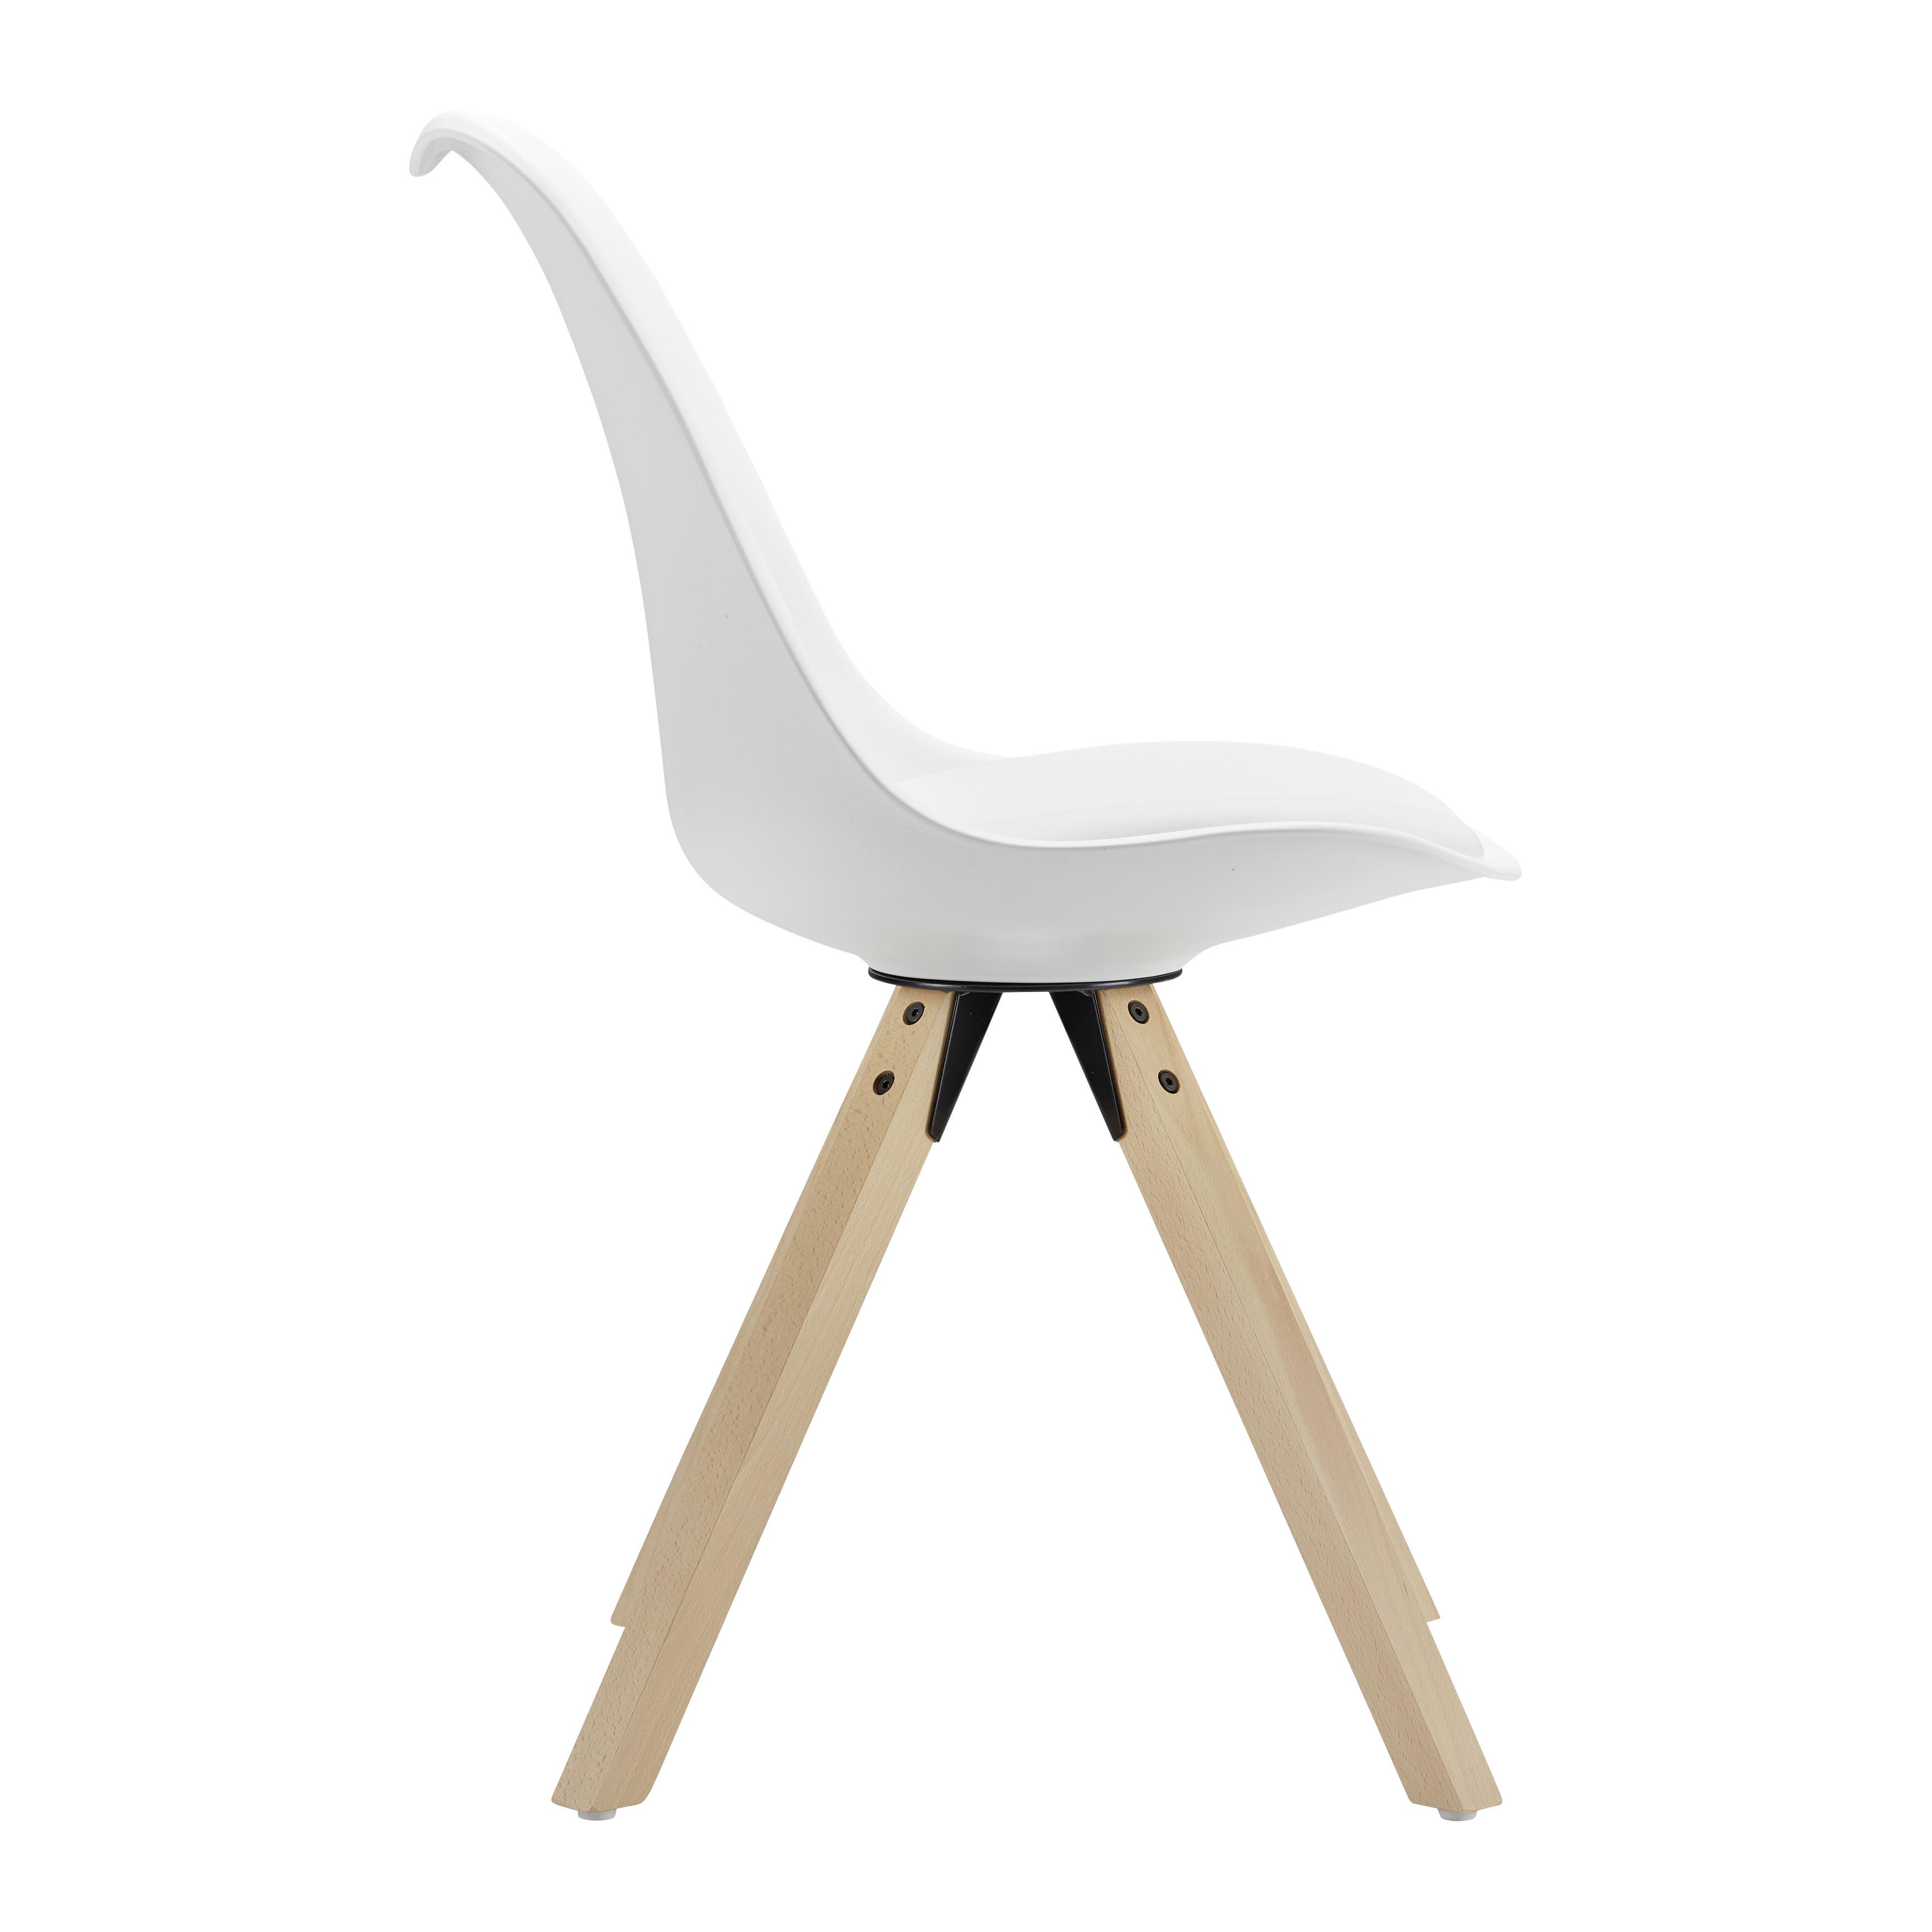 Stuhl "Ricky", weiß, Echtholz Beine - Buchefarben/Weiß, MODERN, Holz/Kunststoff (48/85/57,4cm) - Bessagi Home